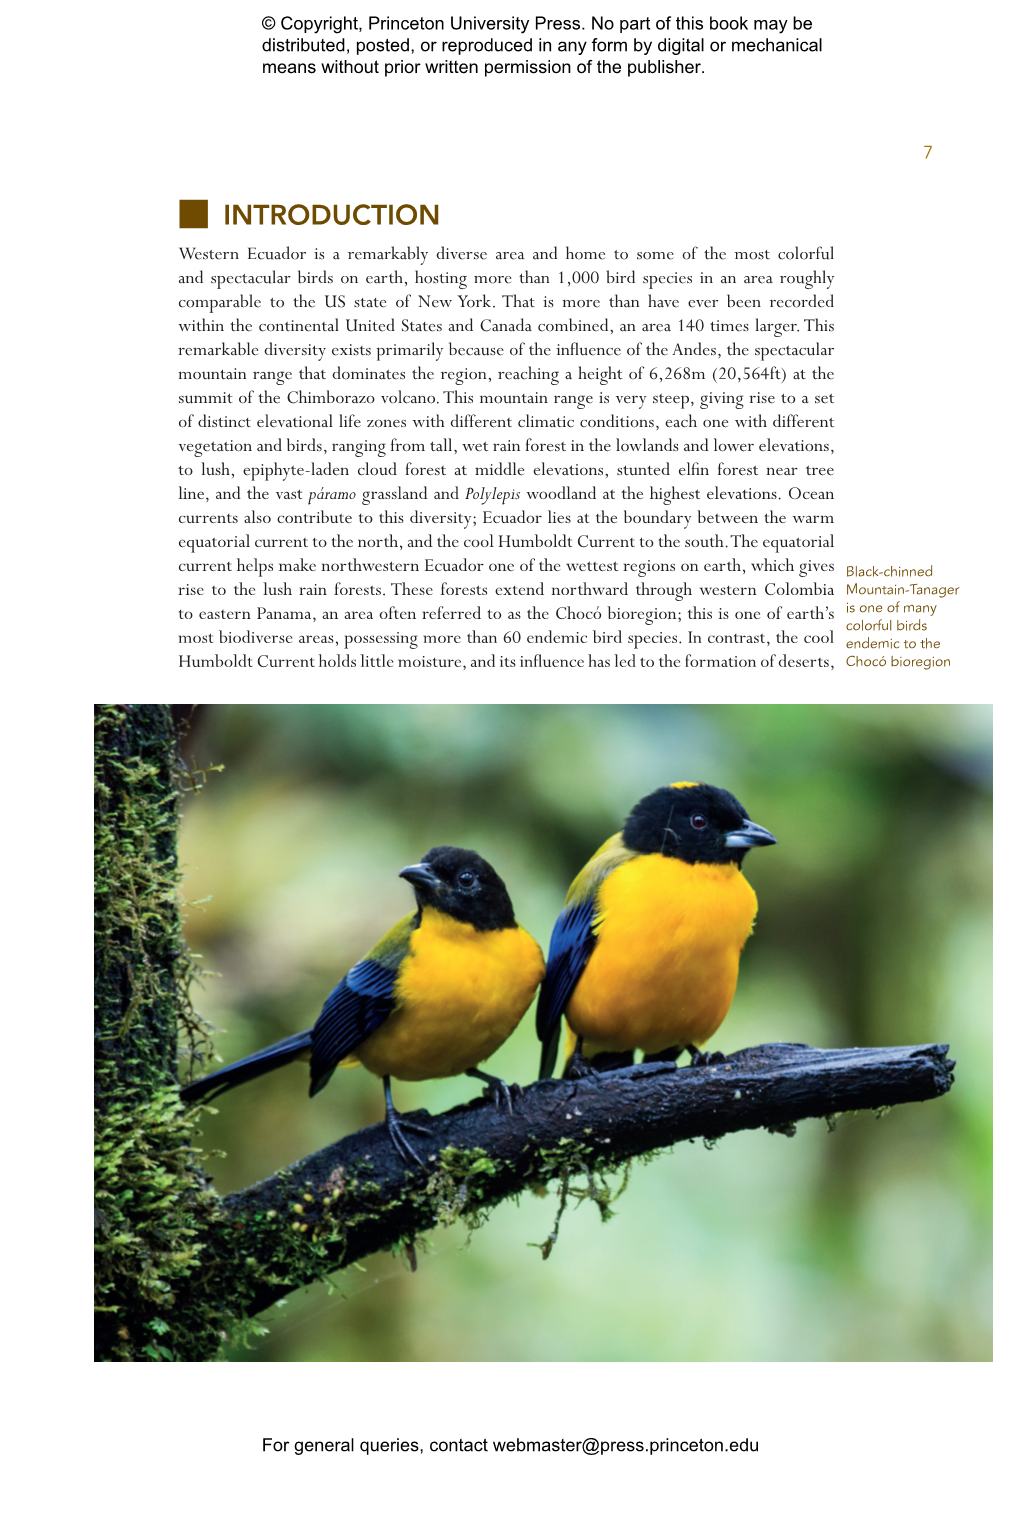 Birds of Western Ecuador